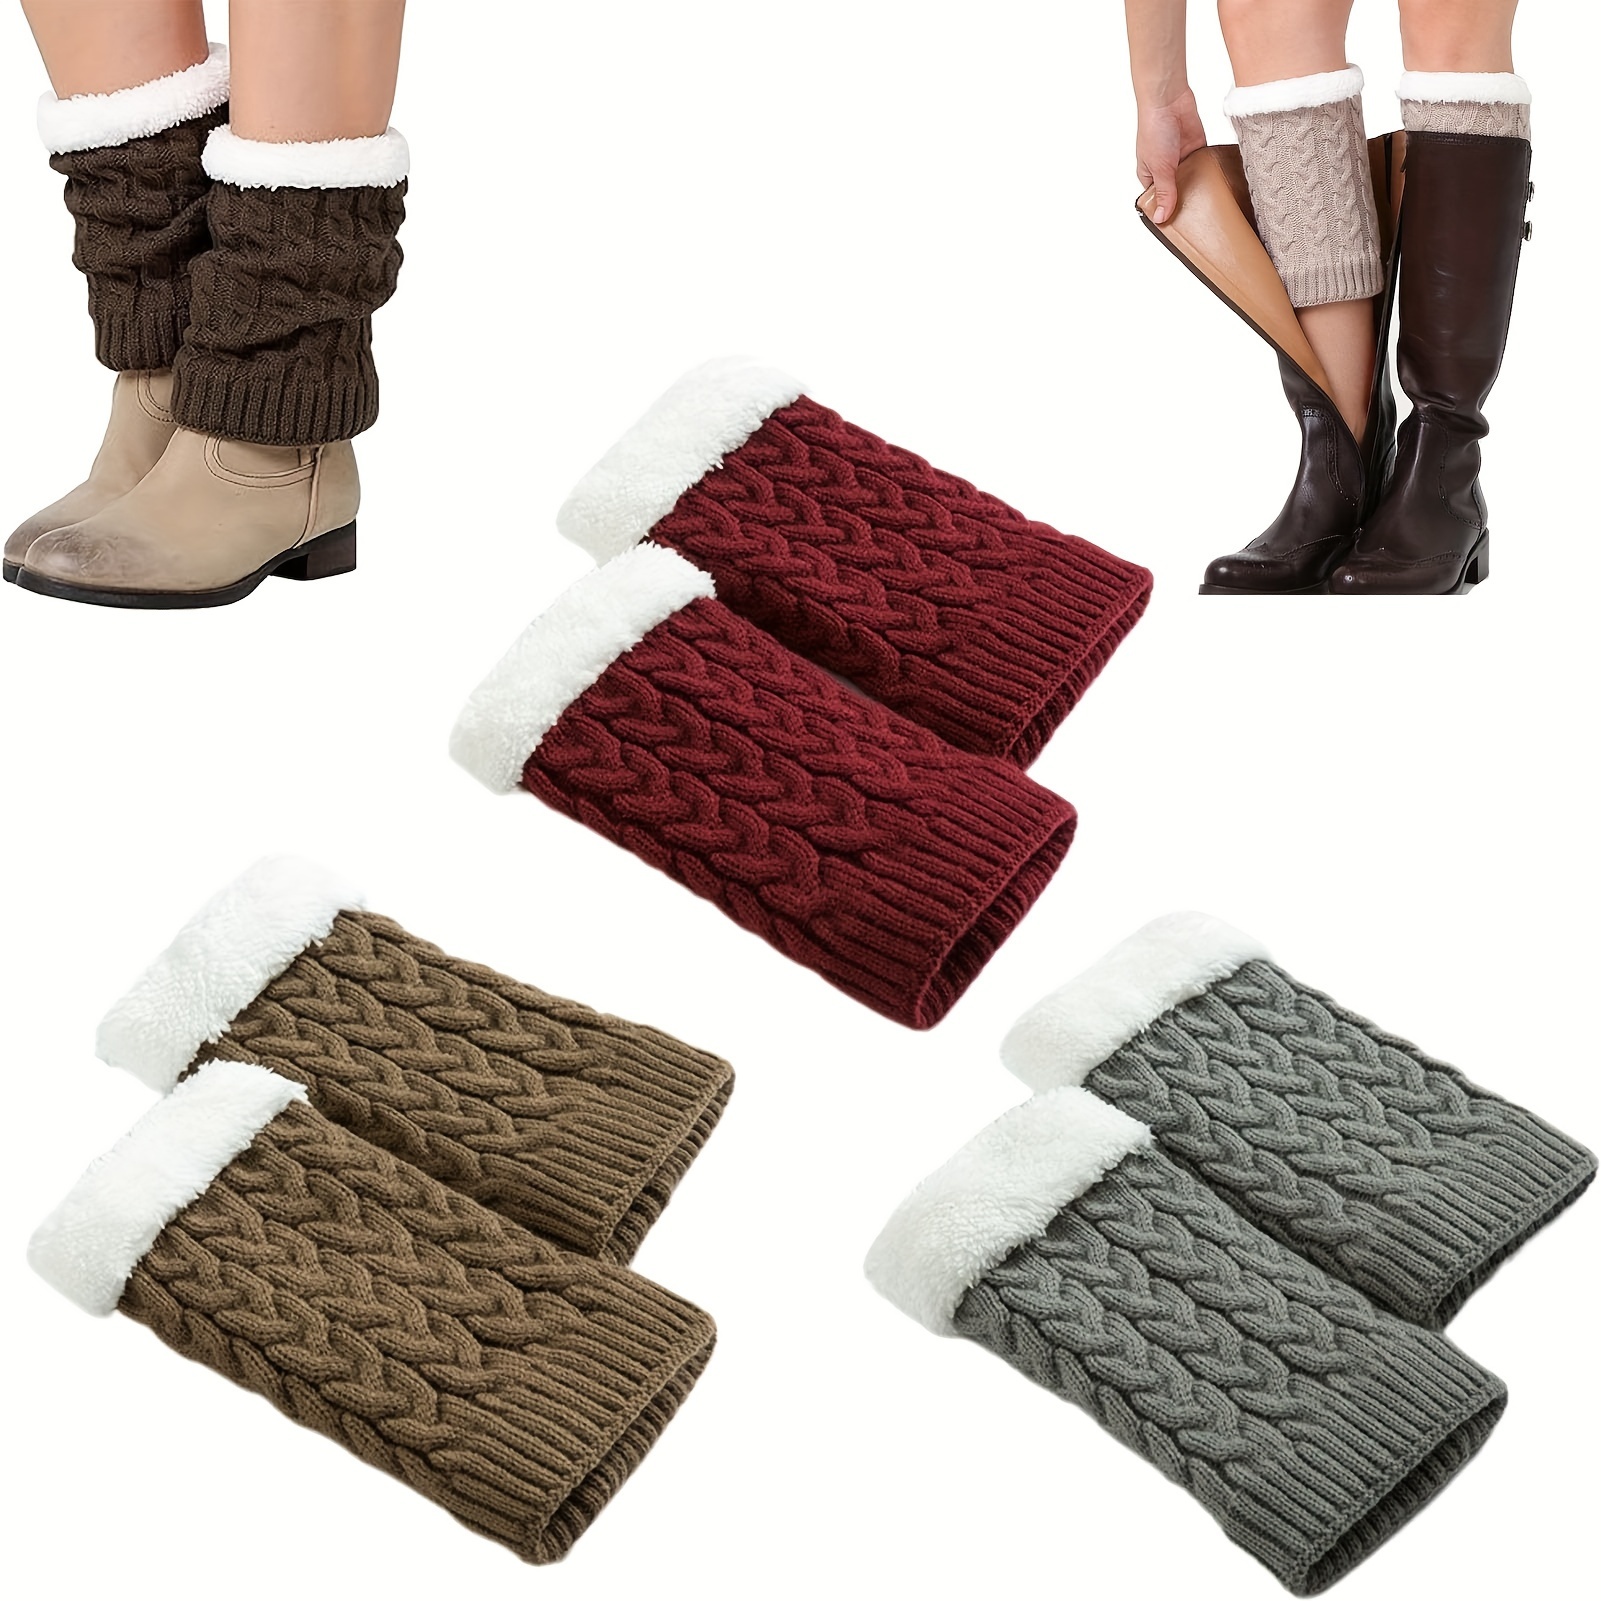 Women Knit Leg Warmers Winter Warm Long Boot Socks, Pack of 2 - Multi Colors